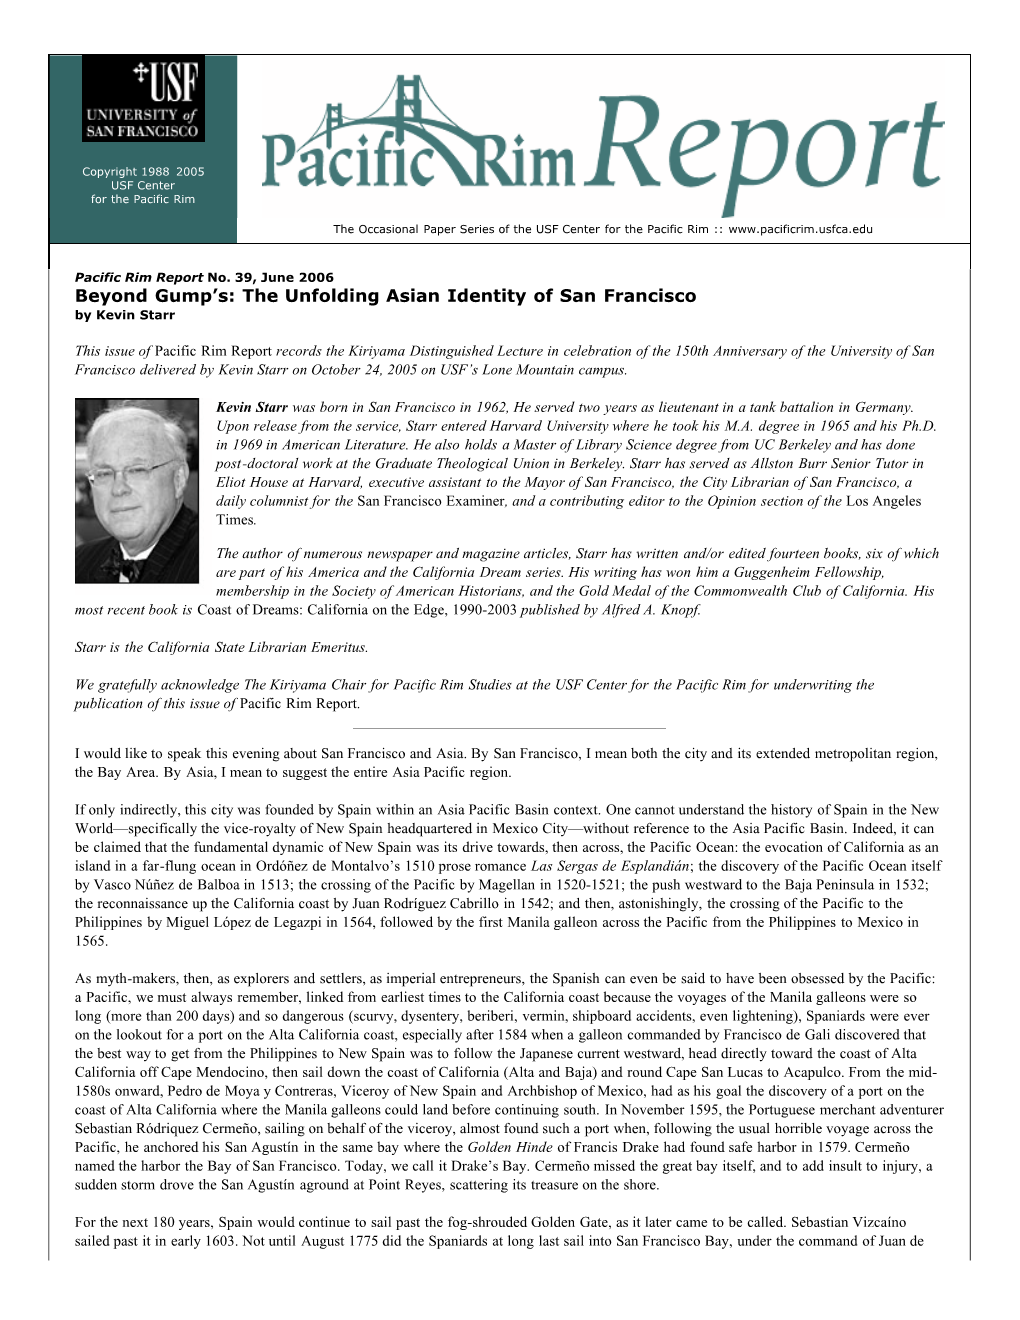 Pacific Rim Report 39